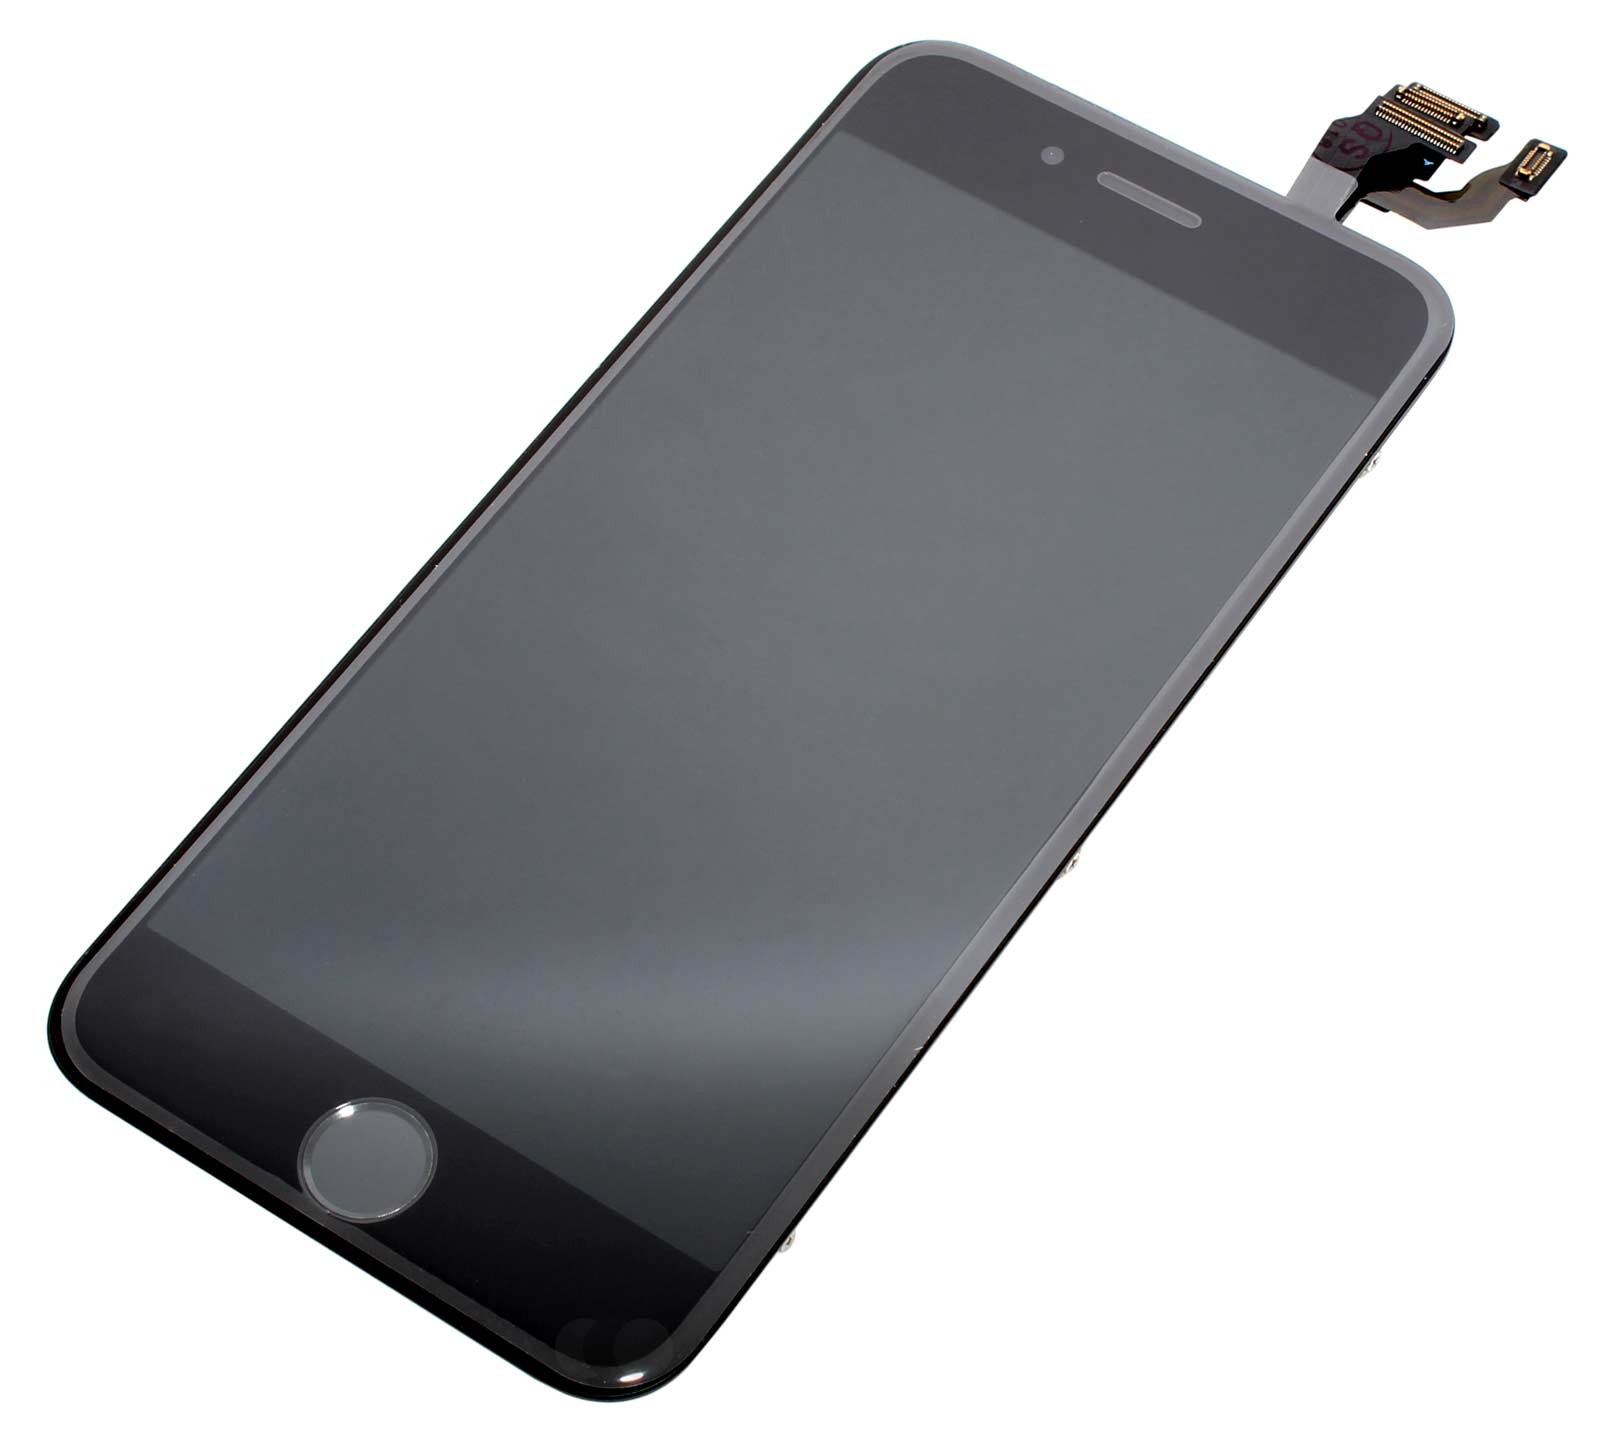 LCD Retina Display Bildschirm für iPhone 6 mit Glas Scheibe in schwarz, das Display ist vormontiert mit Front Kamera, Licht Sensor, Hörmuschel, Mikrofon und Home Button mit Flex Kabel